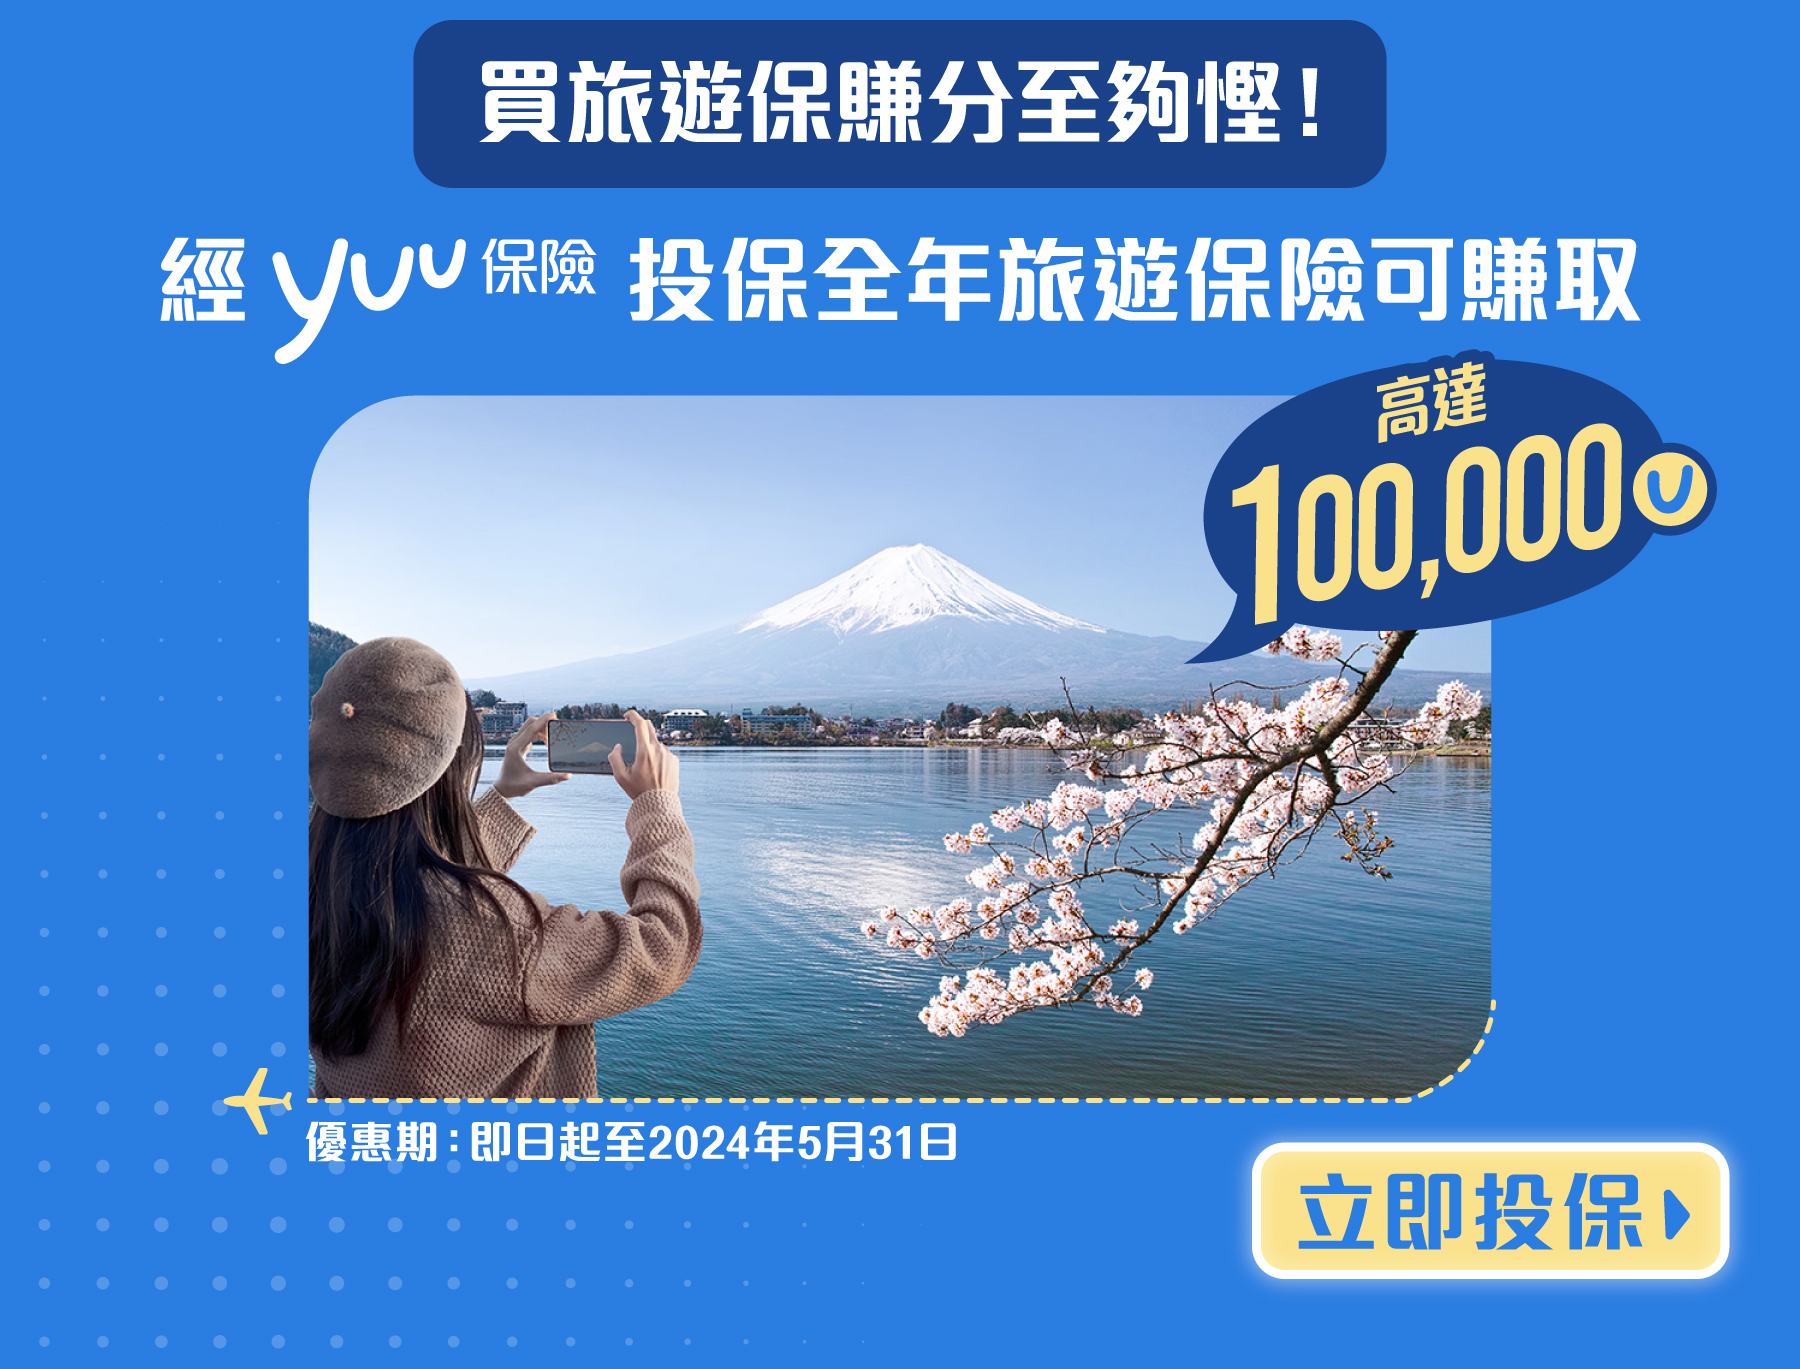 經yuu保險投保全年旅遊保險可賺高達100,000積分